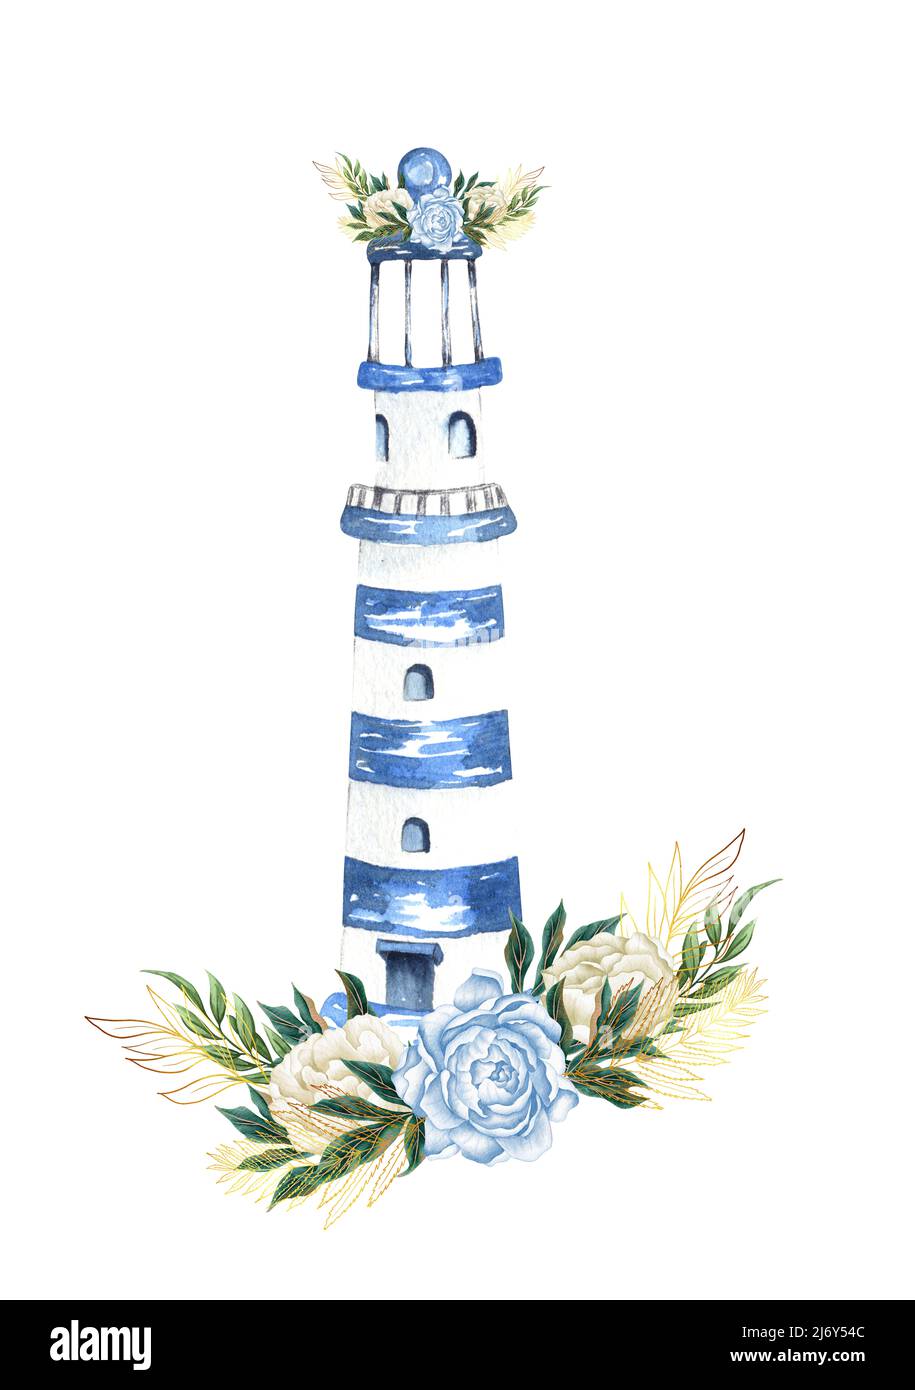 Aquarelle dessin à la main, illustration marine, florale avec phare et bouquet de fleurs. Banque D'Images